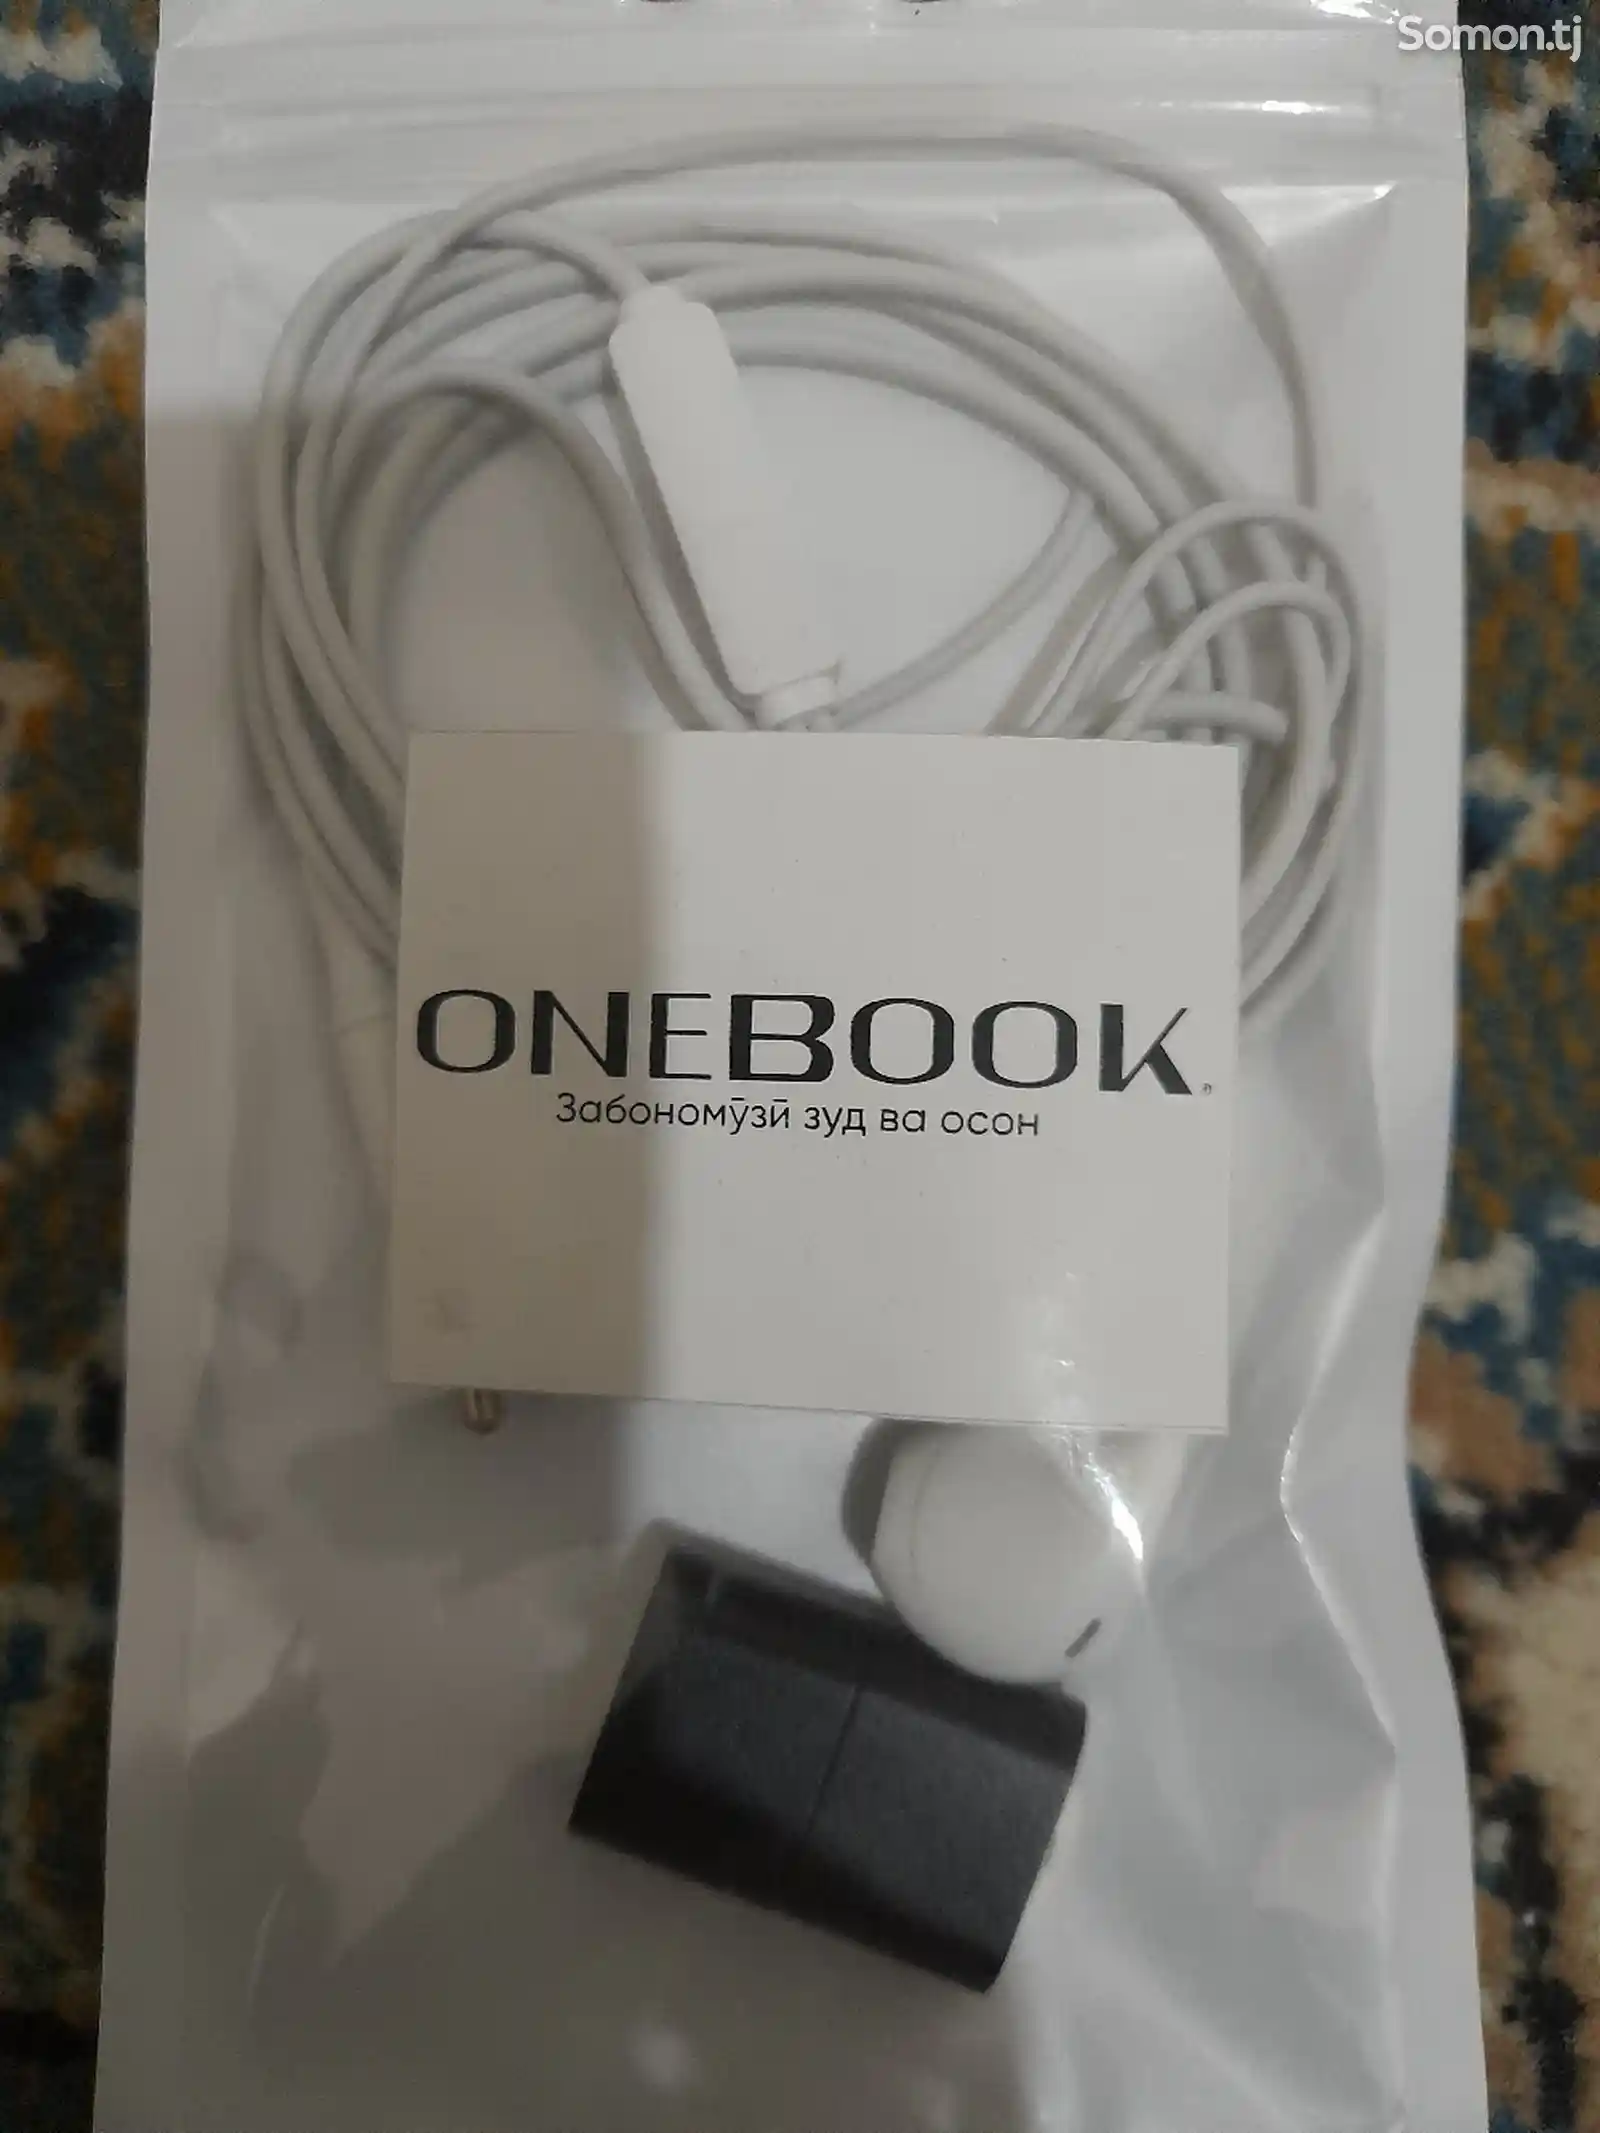 Книга Onebook-3